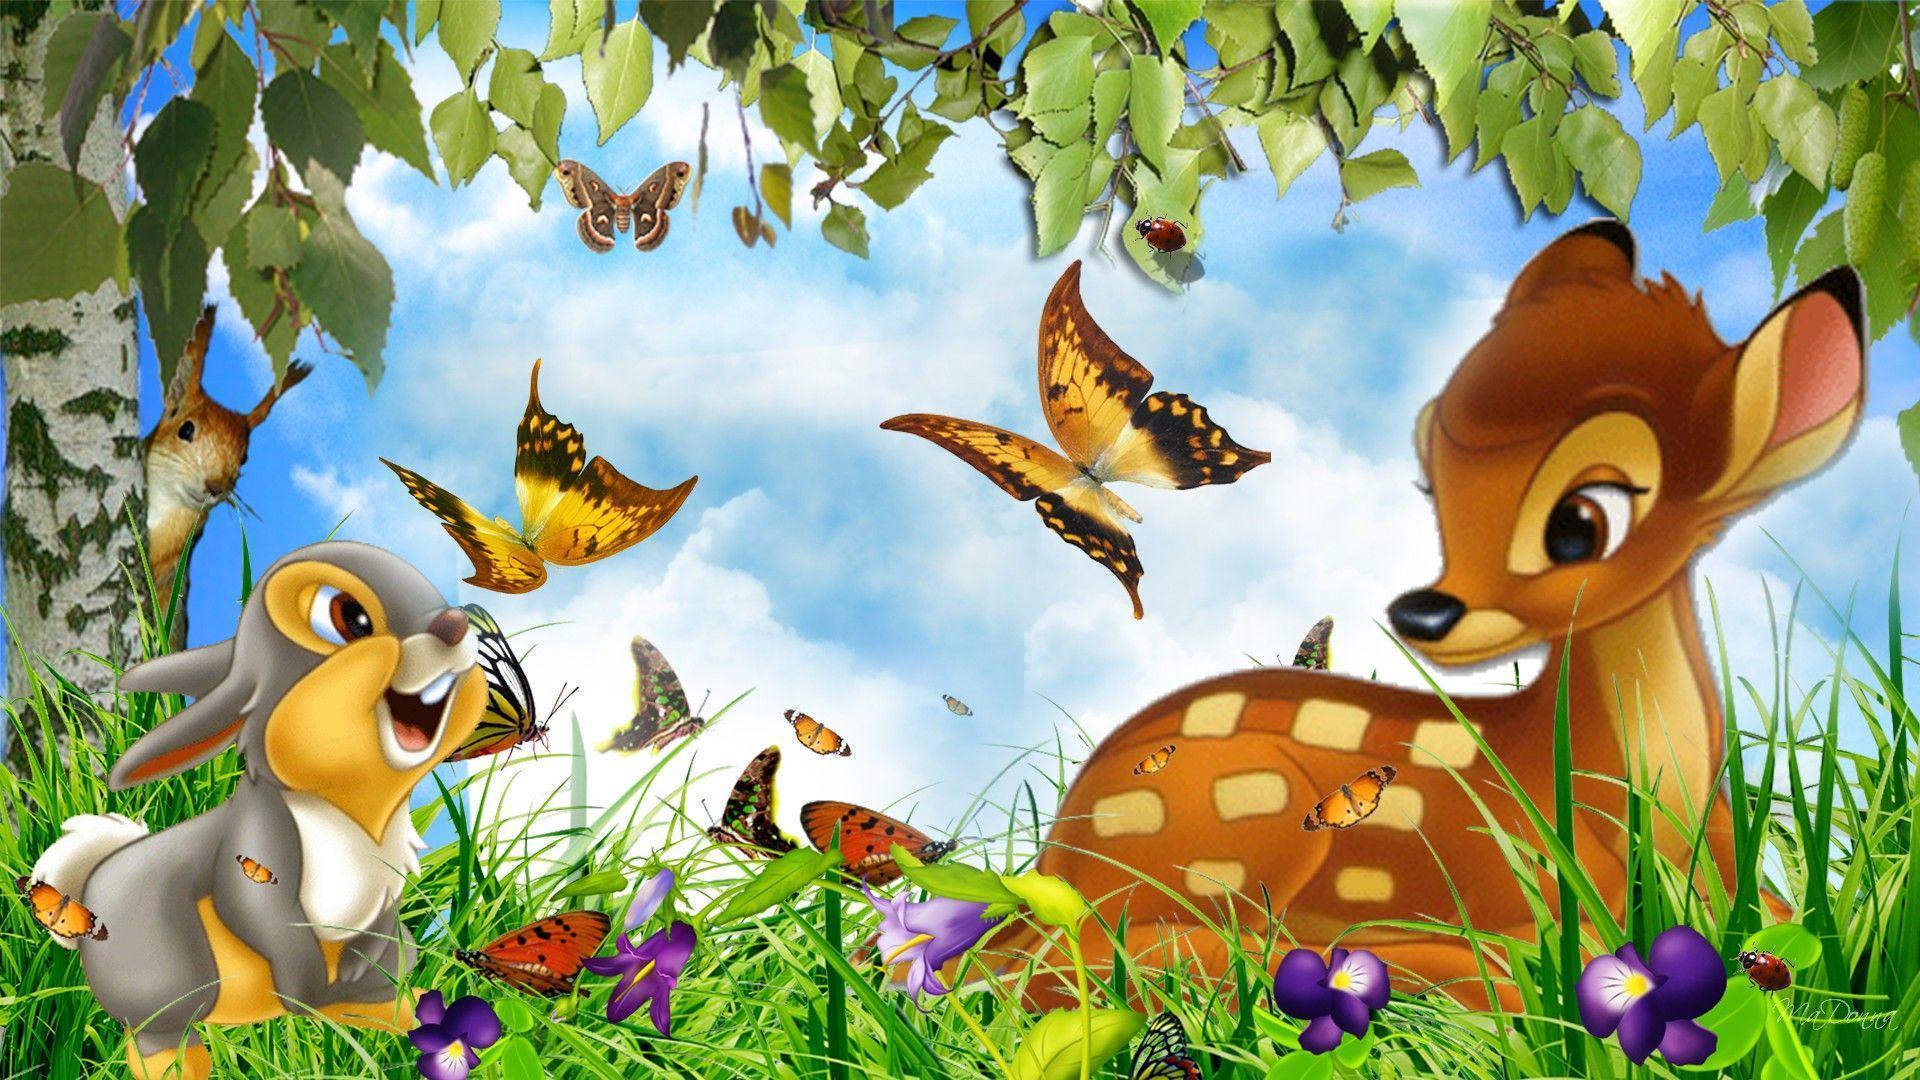 Bunnies And Butterflies - Deer And Rabbit Cartoon , HD Wallpaper & Backgrounds